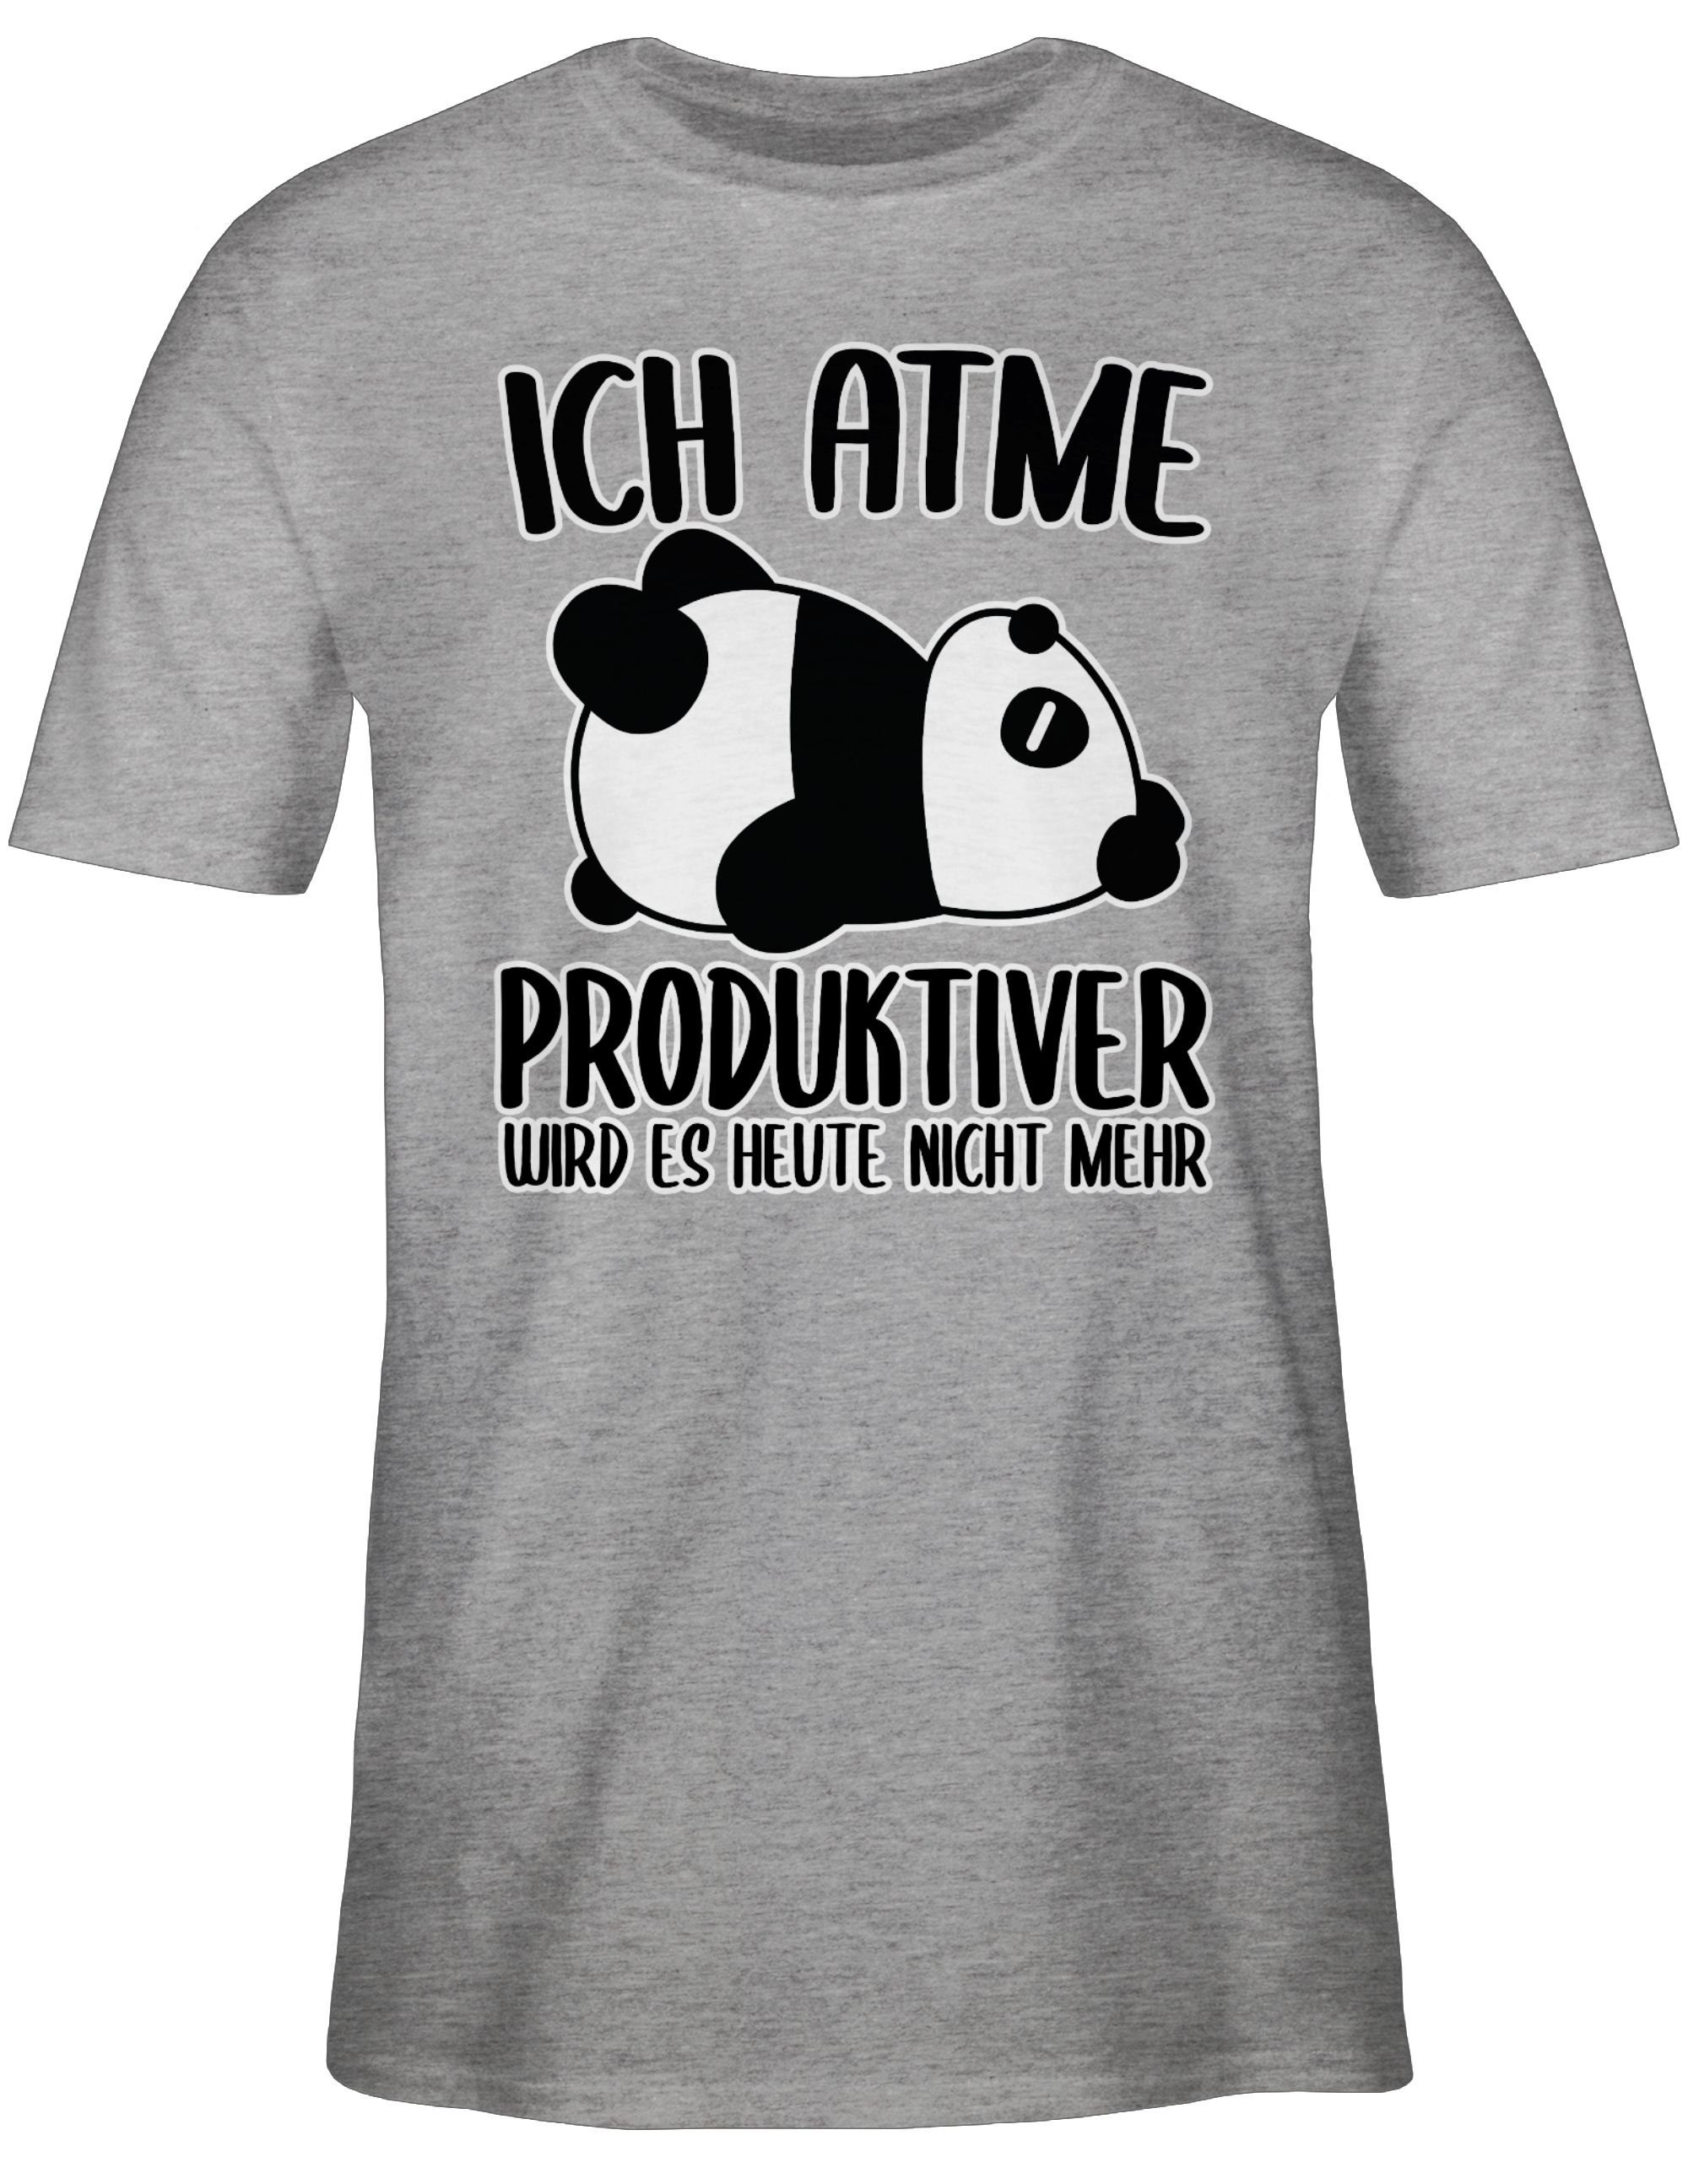 Shirtracer T-Shirt Ich atme produktiver es Grau 03 mit Sprüche meliert mehr Spruch Statement - Panda nicht mit weiß wird